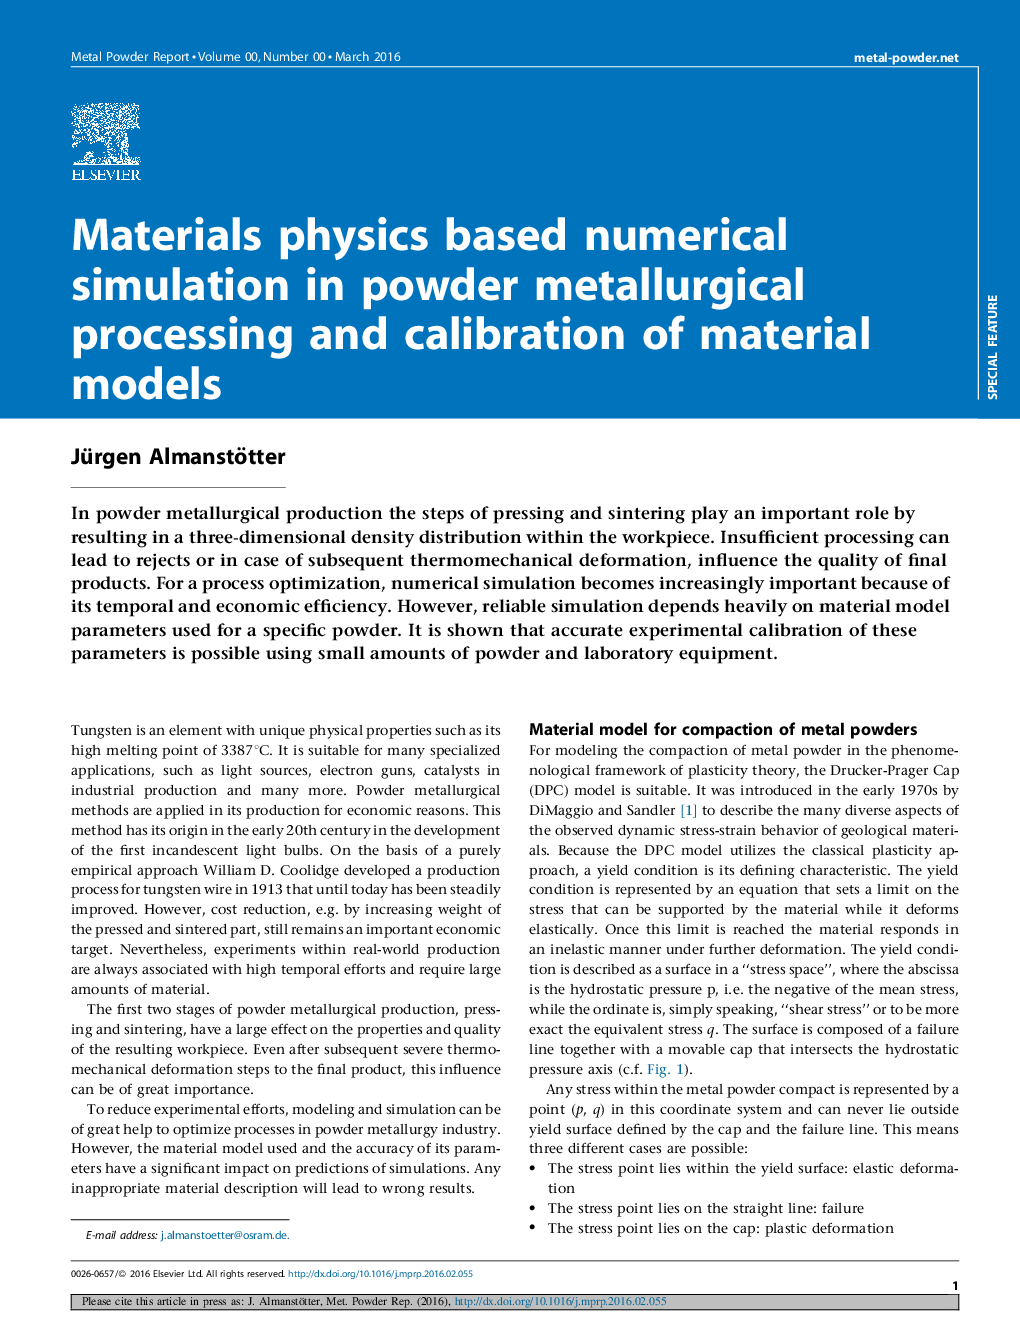 شبیه سازی عددی مبتنی بر فیزیک مواد در پردازش متالورژیکی پودر و کالیبراسیون مدل های مواد 